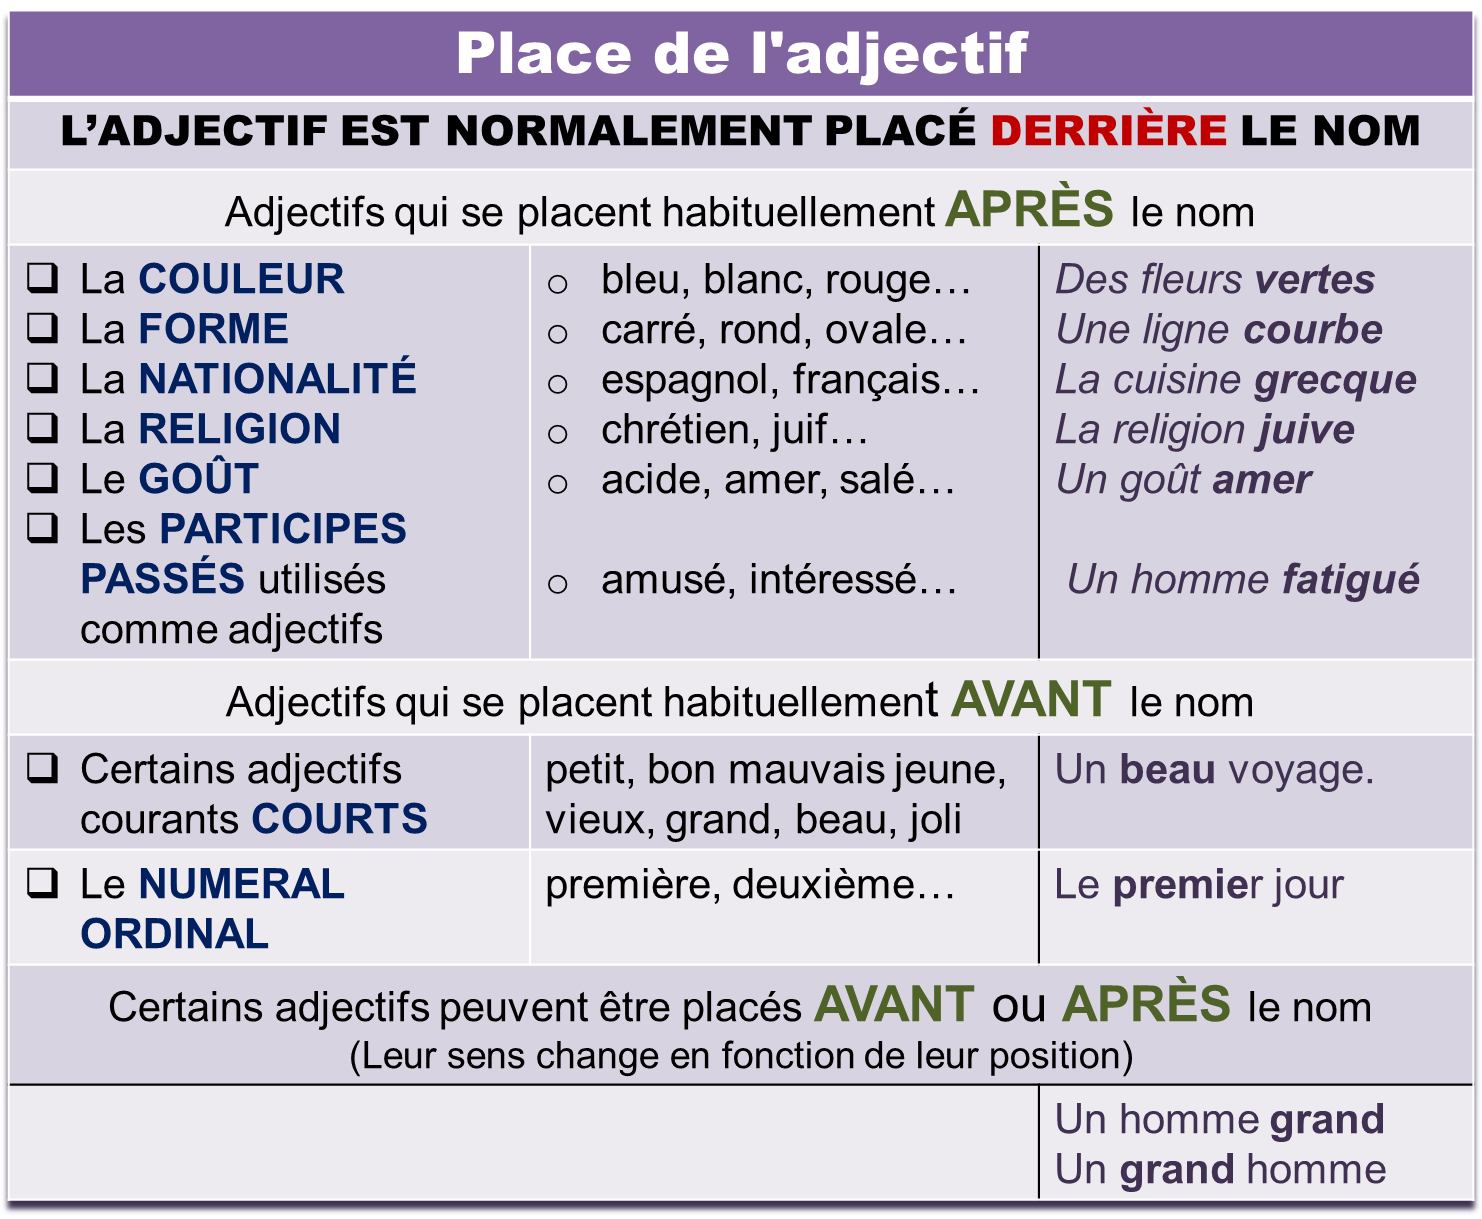 Adjectif французский язык. Les adjectifs во французском. Французский прилагательные adjectifs. Сравнение во французском языке. Avant перевод